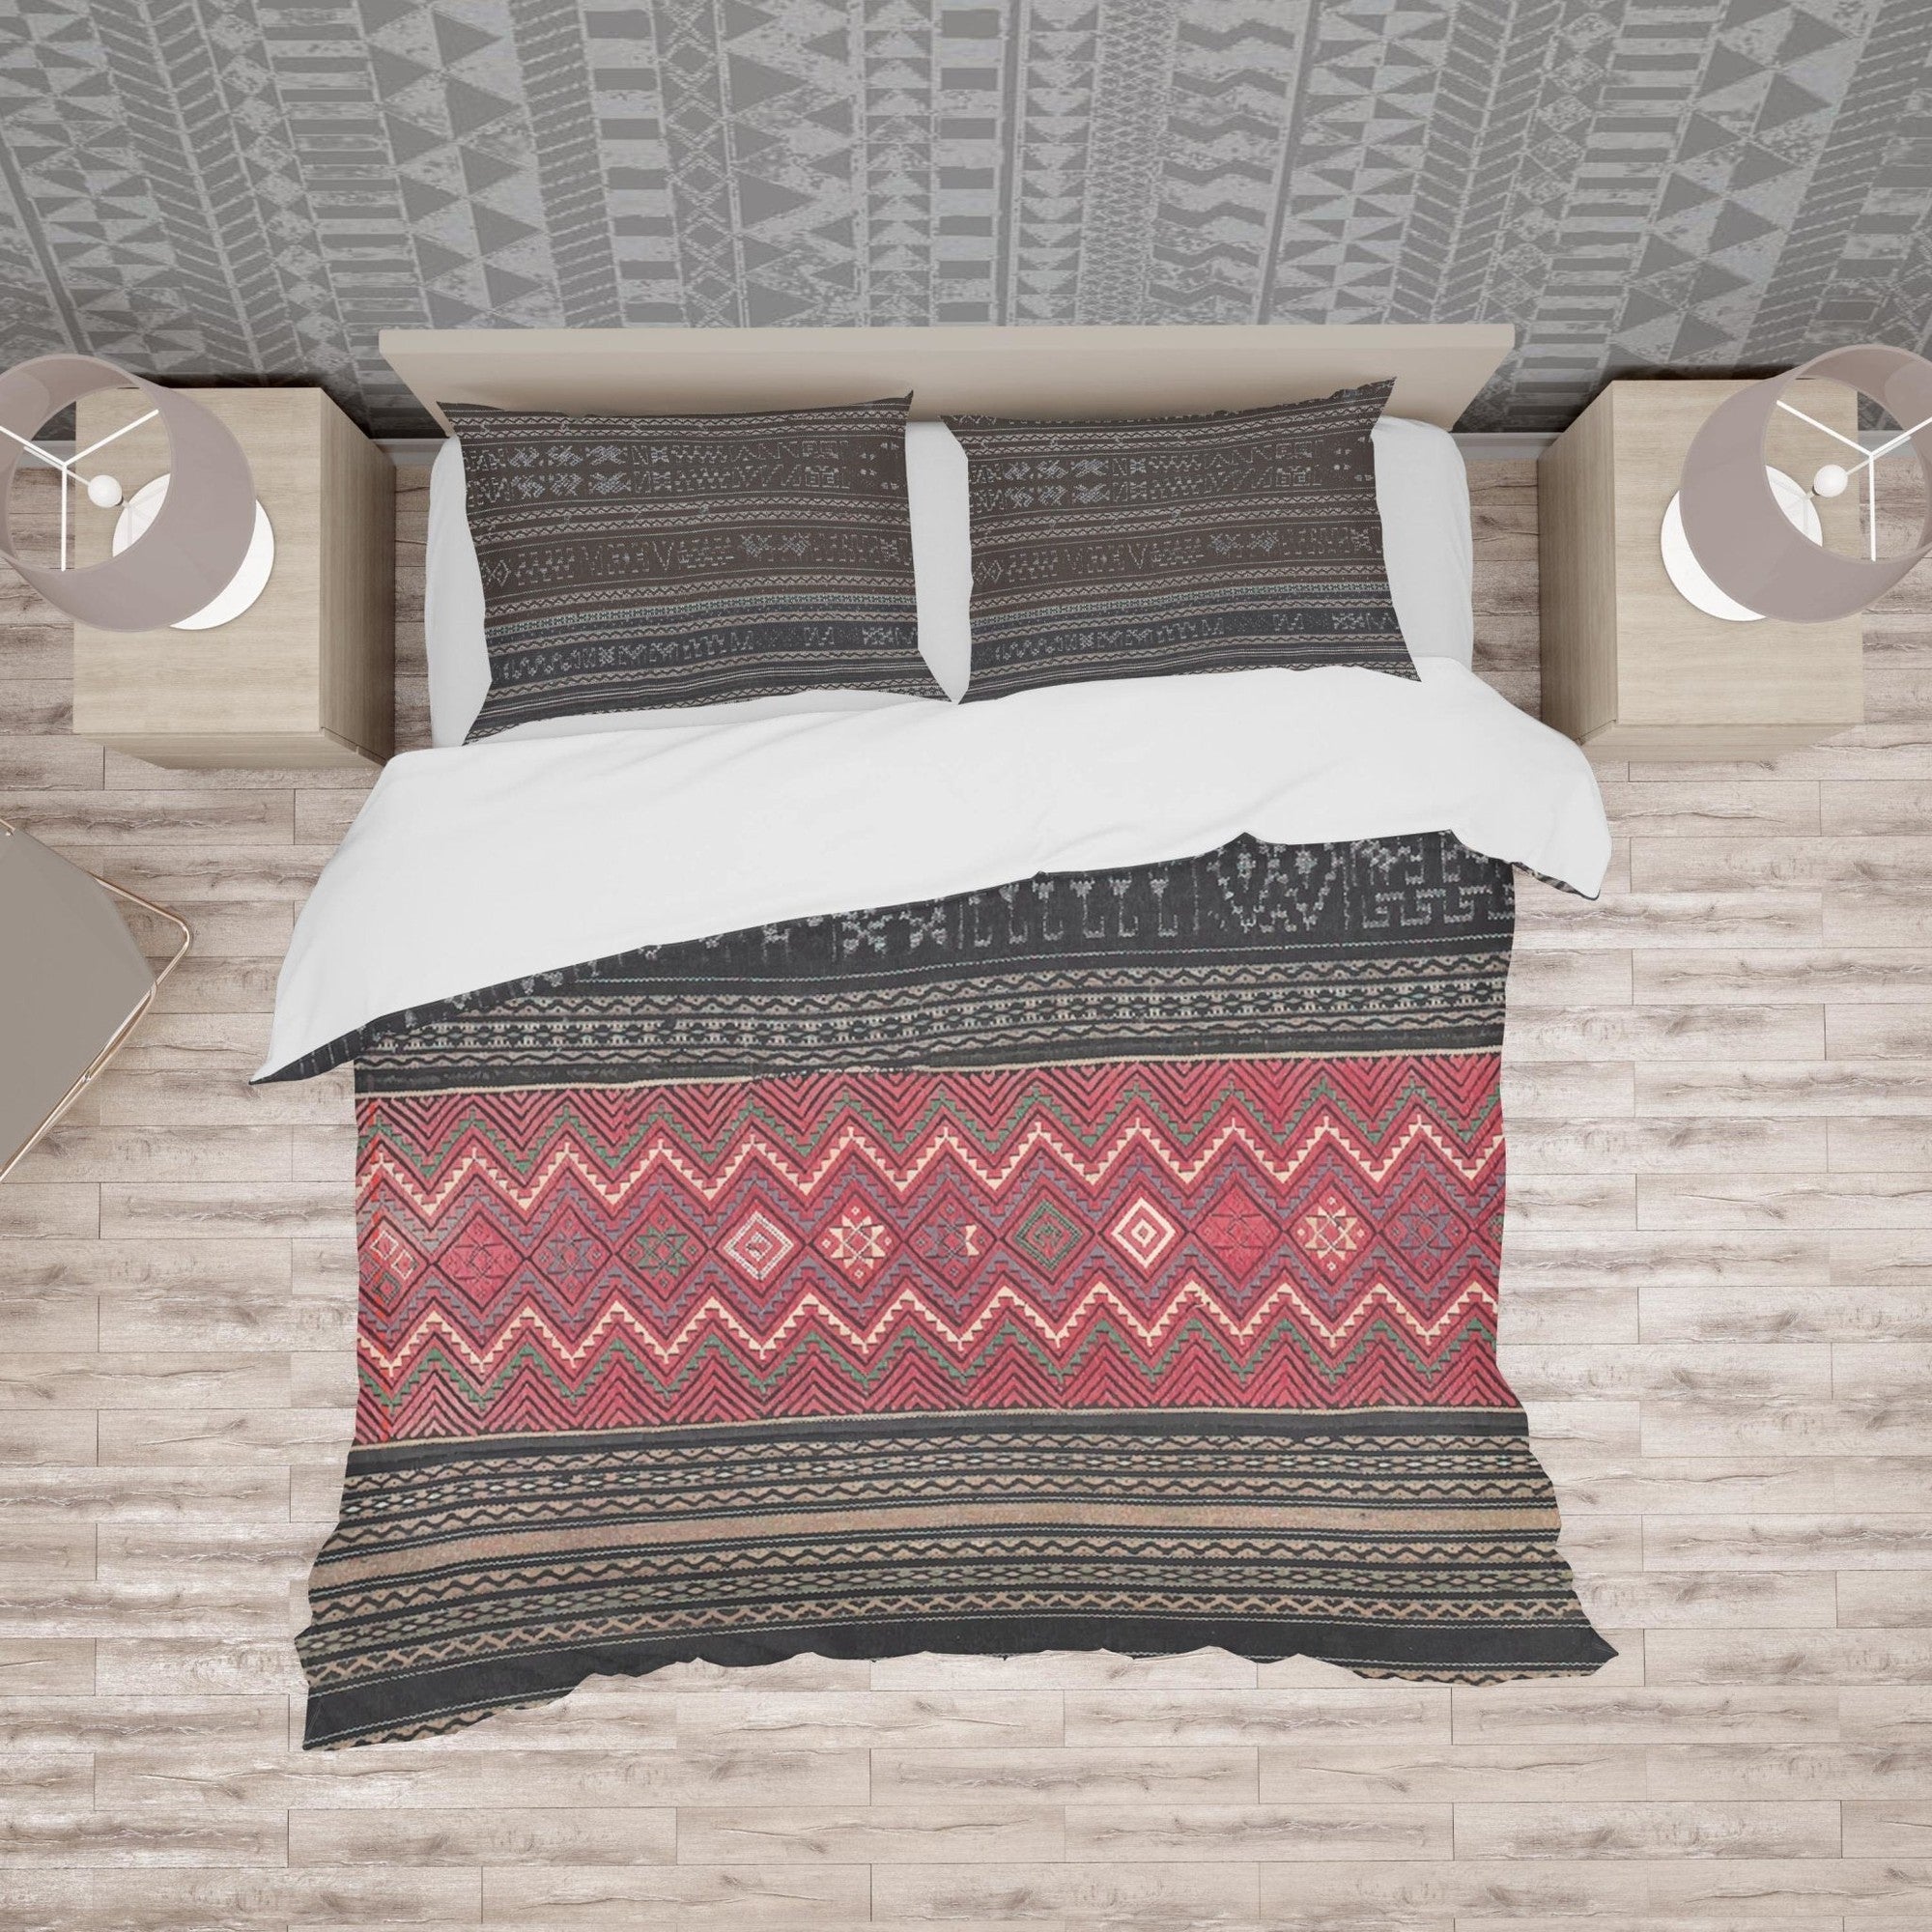 Bedding sets Bedding Set, Li Culture Traditional Design (Central Asia)